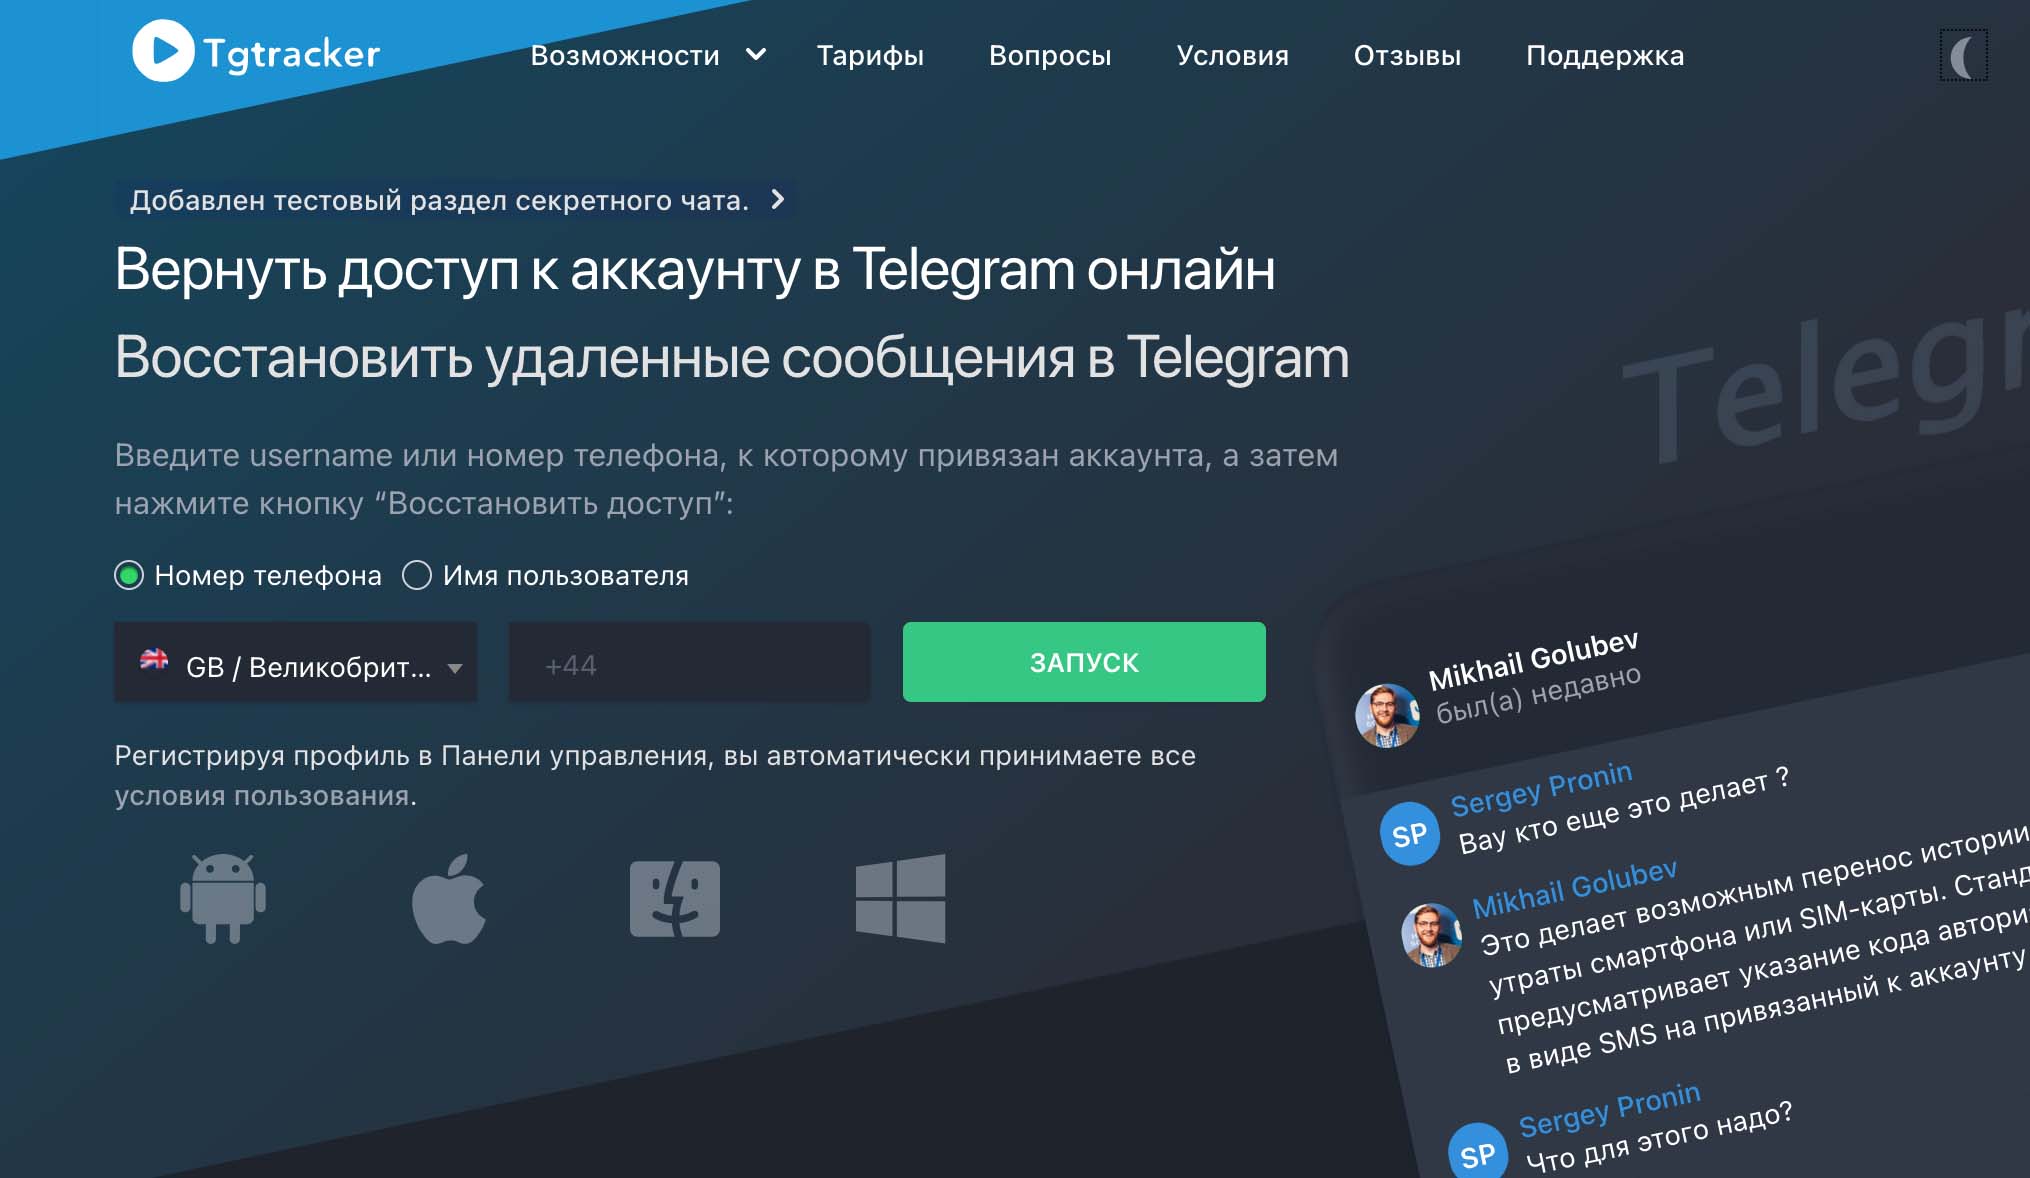 Come utilizzare Tgtracker per tracciare l'attività di Telegram degli utenti